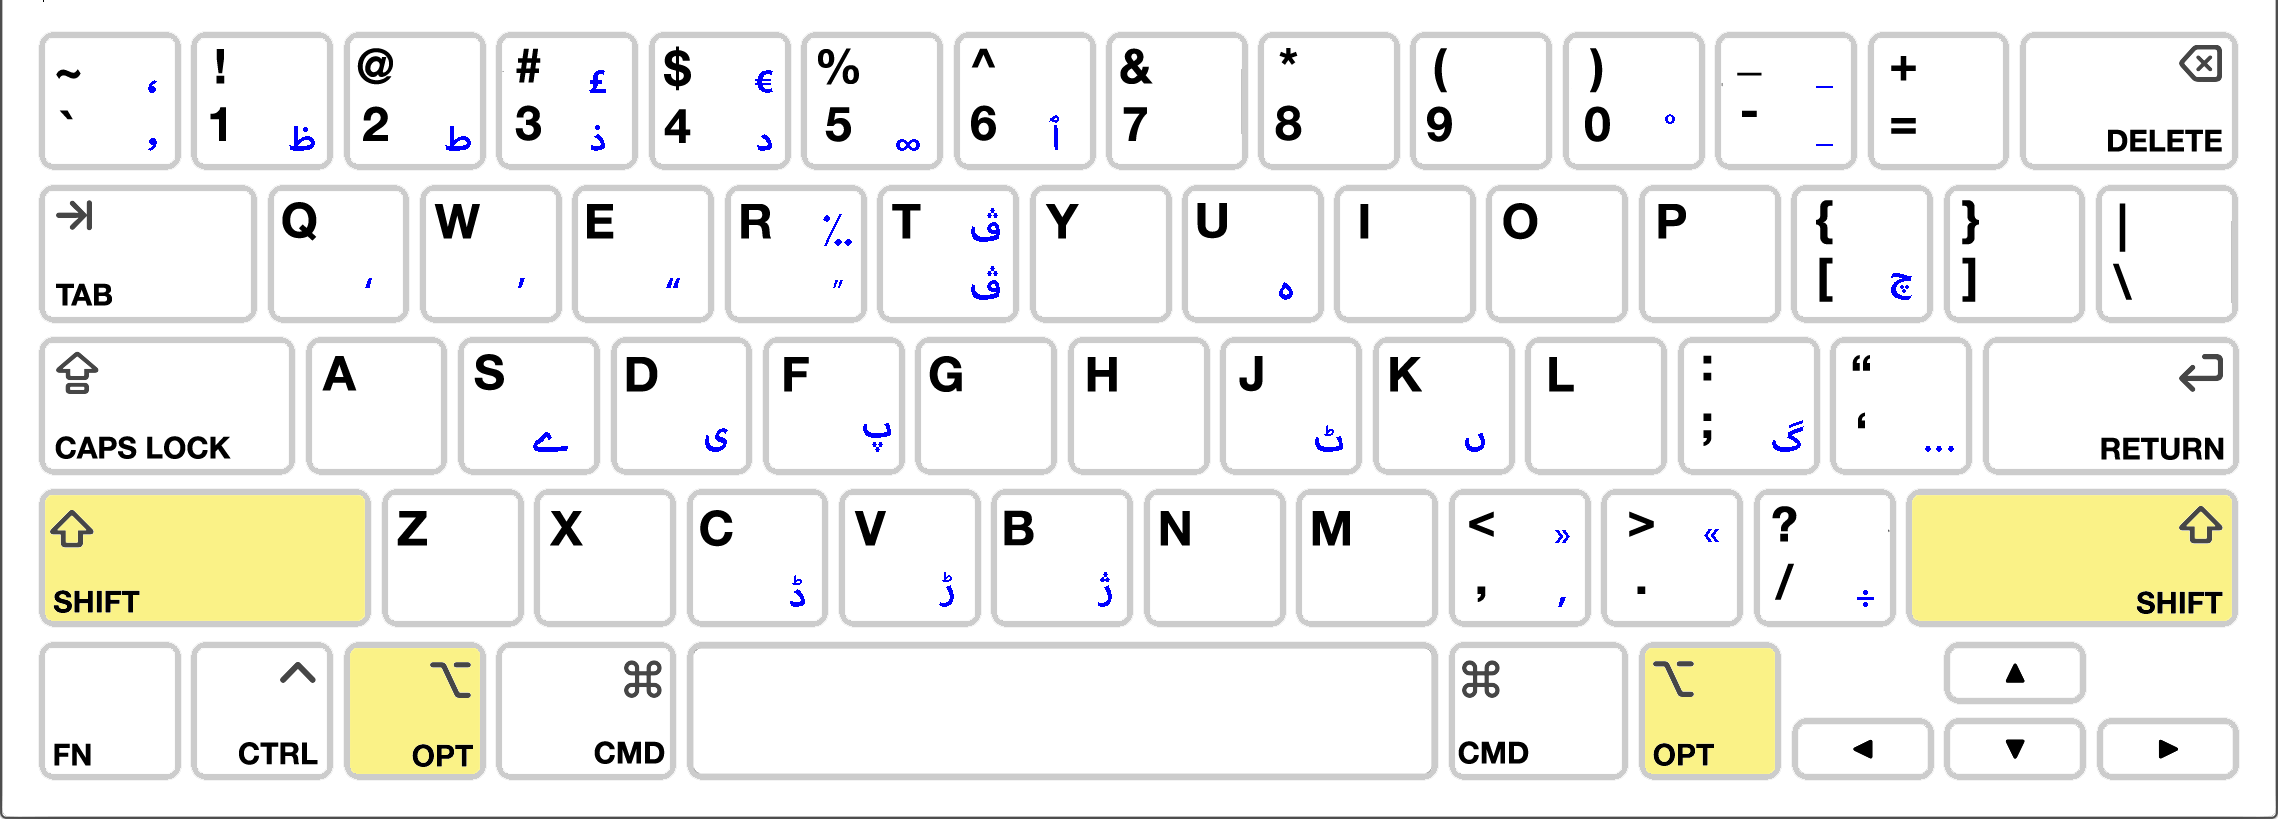 Arabic PC Keyboard Option Layout